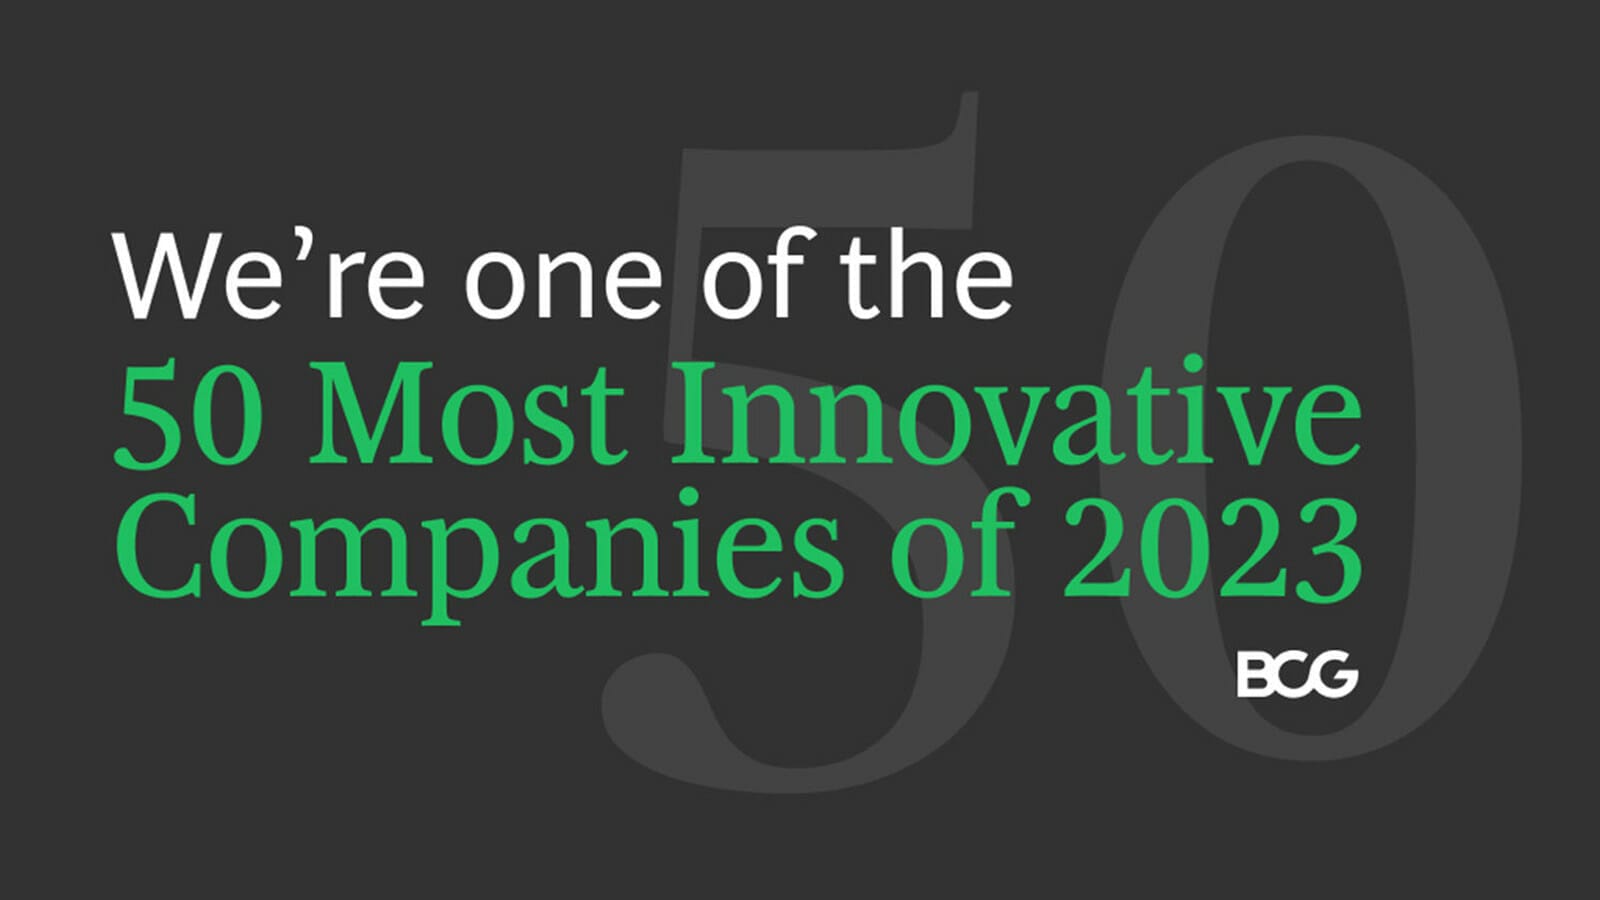 เสียวหมี่ขยับอันดับขึ้นไปอยู่ในท็อป 50 บริษัทที่มีนวัตกรรมมากที่สุดของการจัดอันดับโดย Boston Consulting